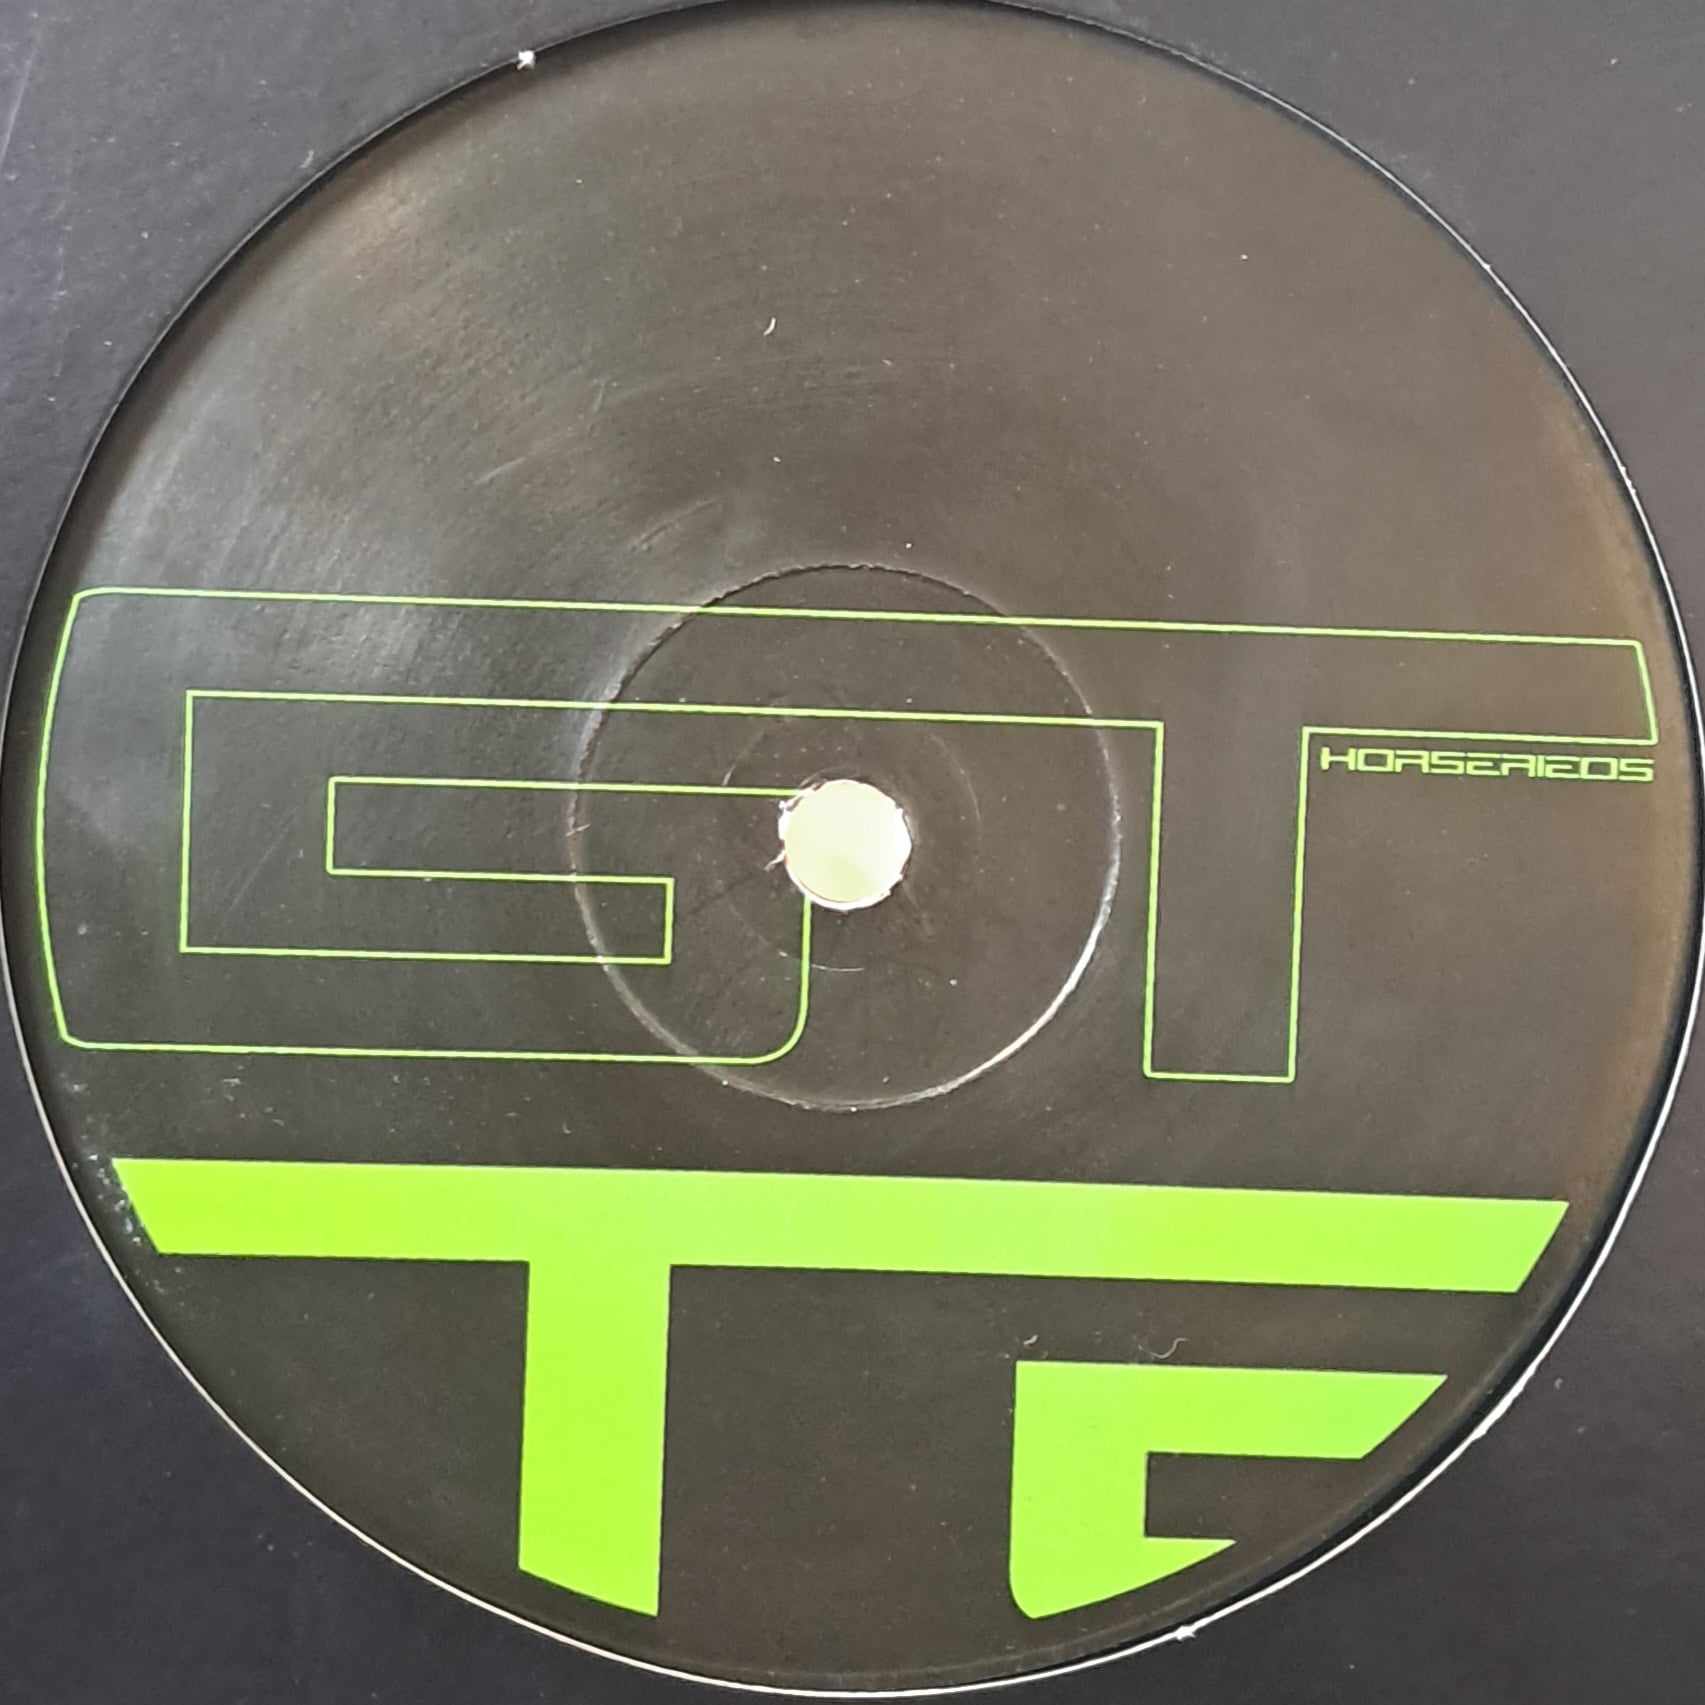 Gelstat Horserie 05 - vinyle techno